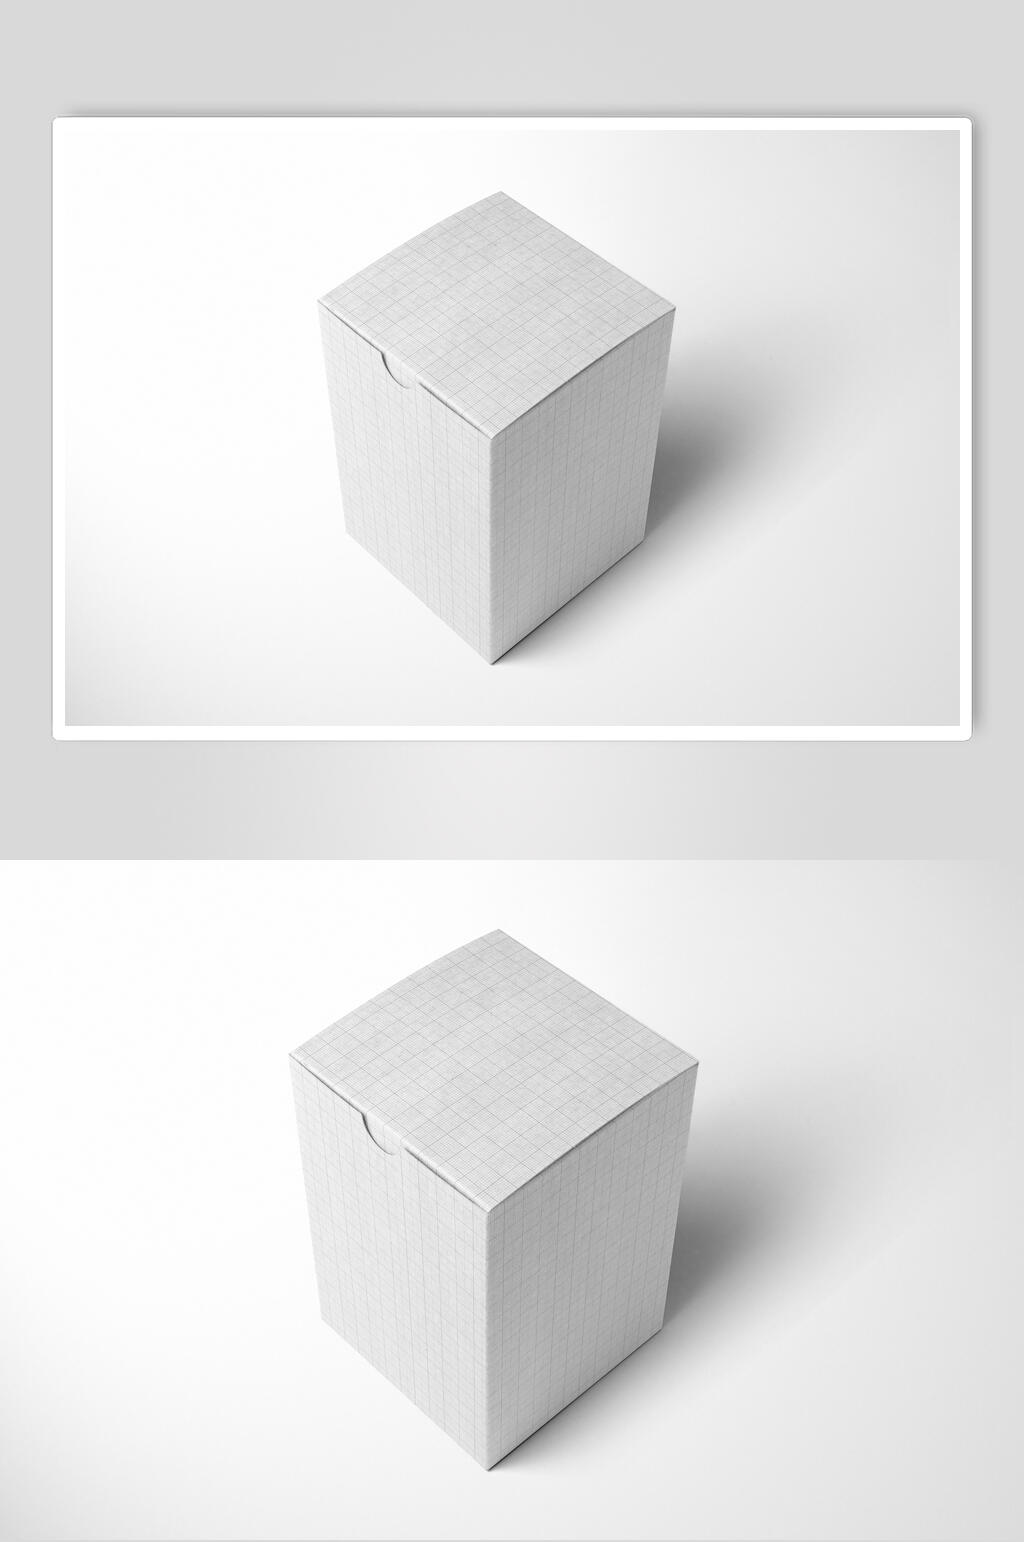 高端长方形包装盒样机设计效果图素材